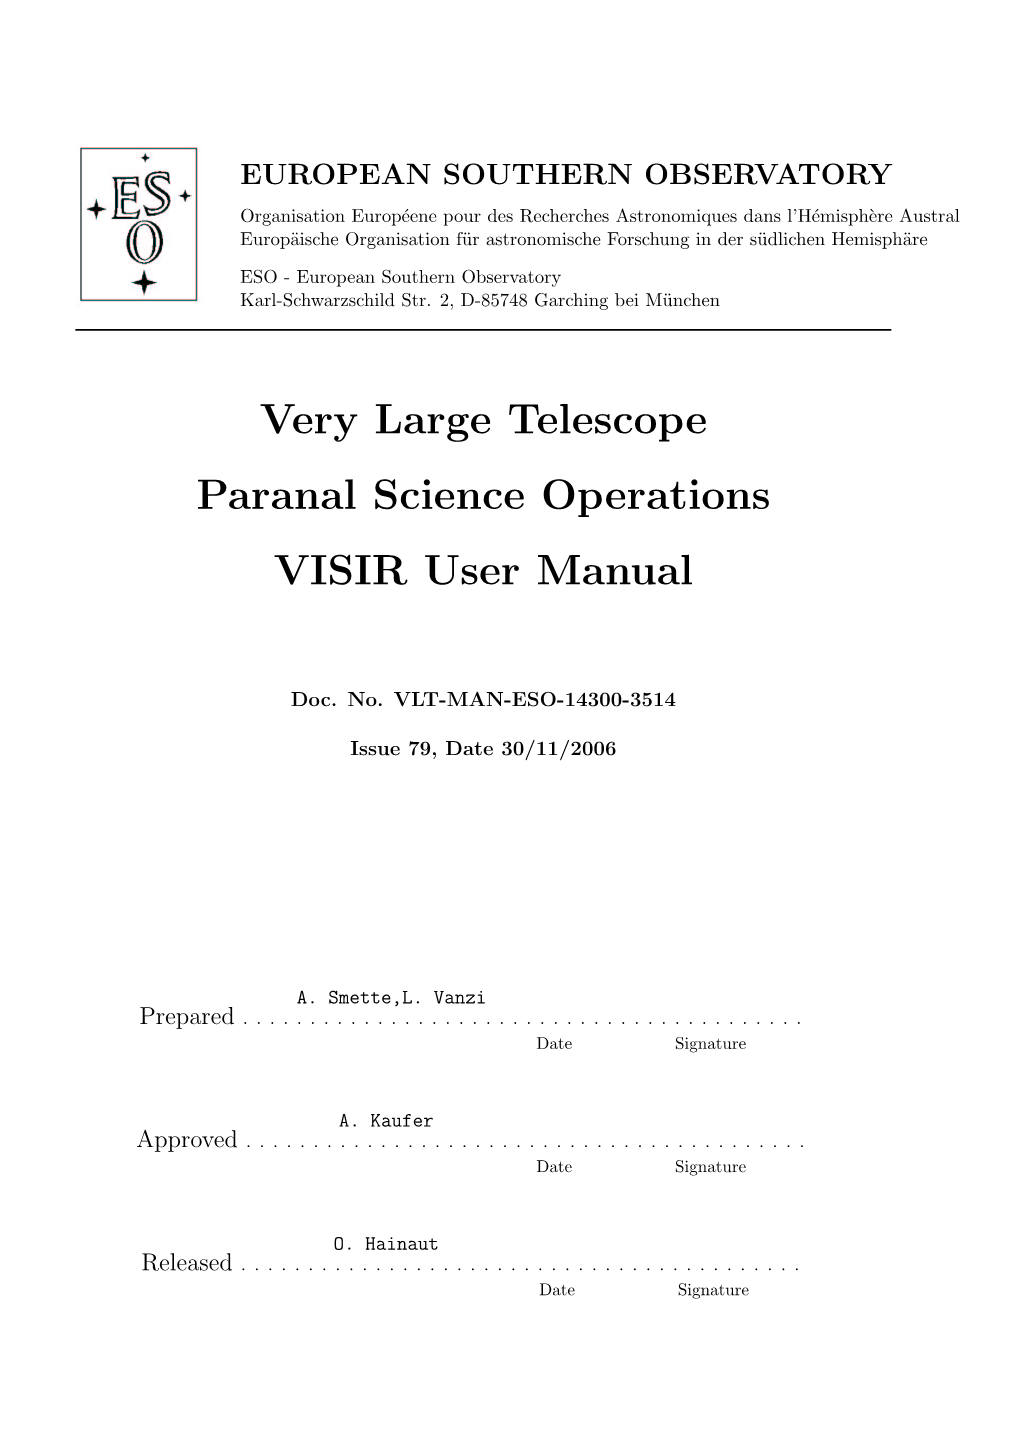 VISIR User Manual